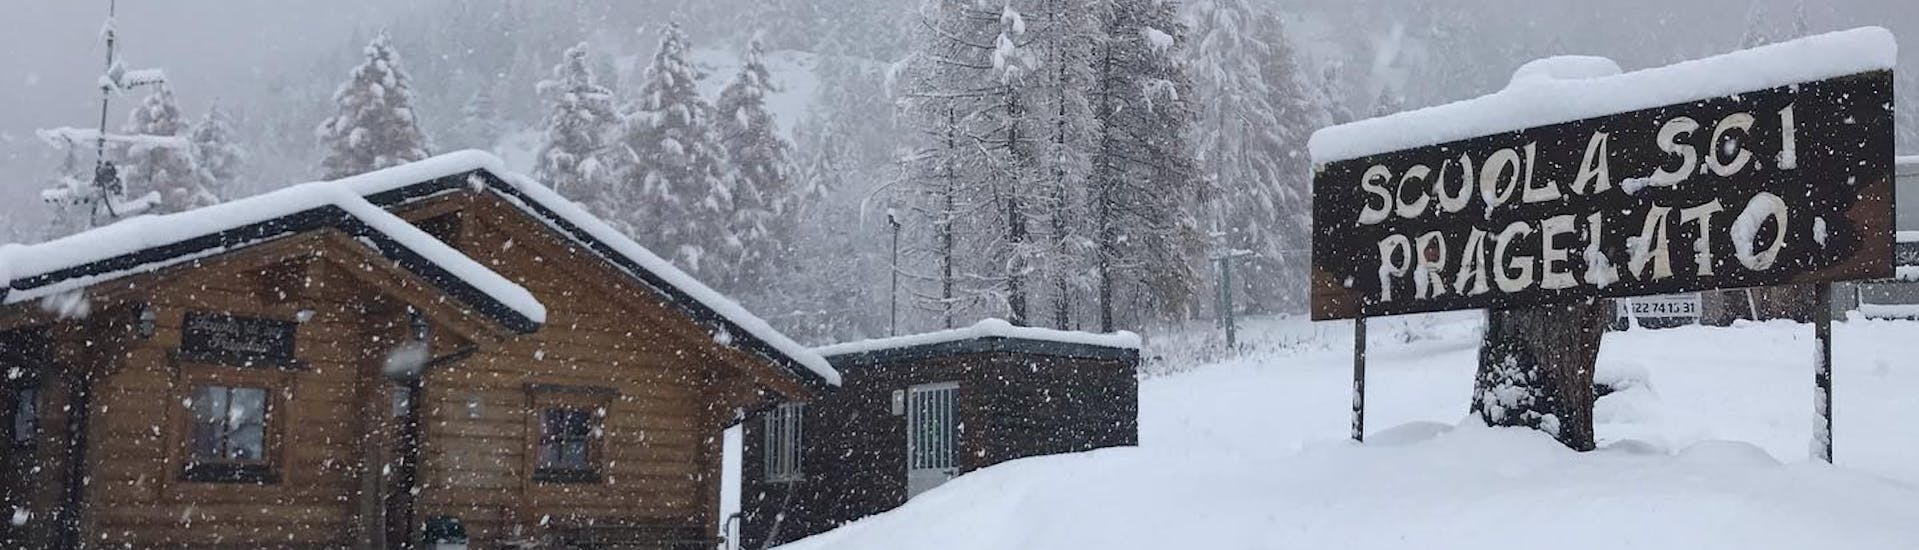 Wunderschönes Bild der verschneiten Skischule in Pragelato. Die perfekte Umgebung für einen der privaten Skikurse für Erwachsene für alle Levels. 